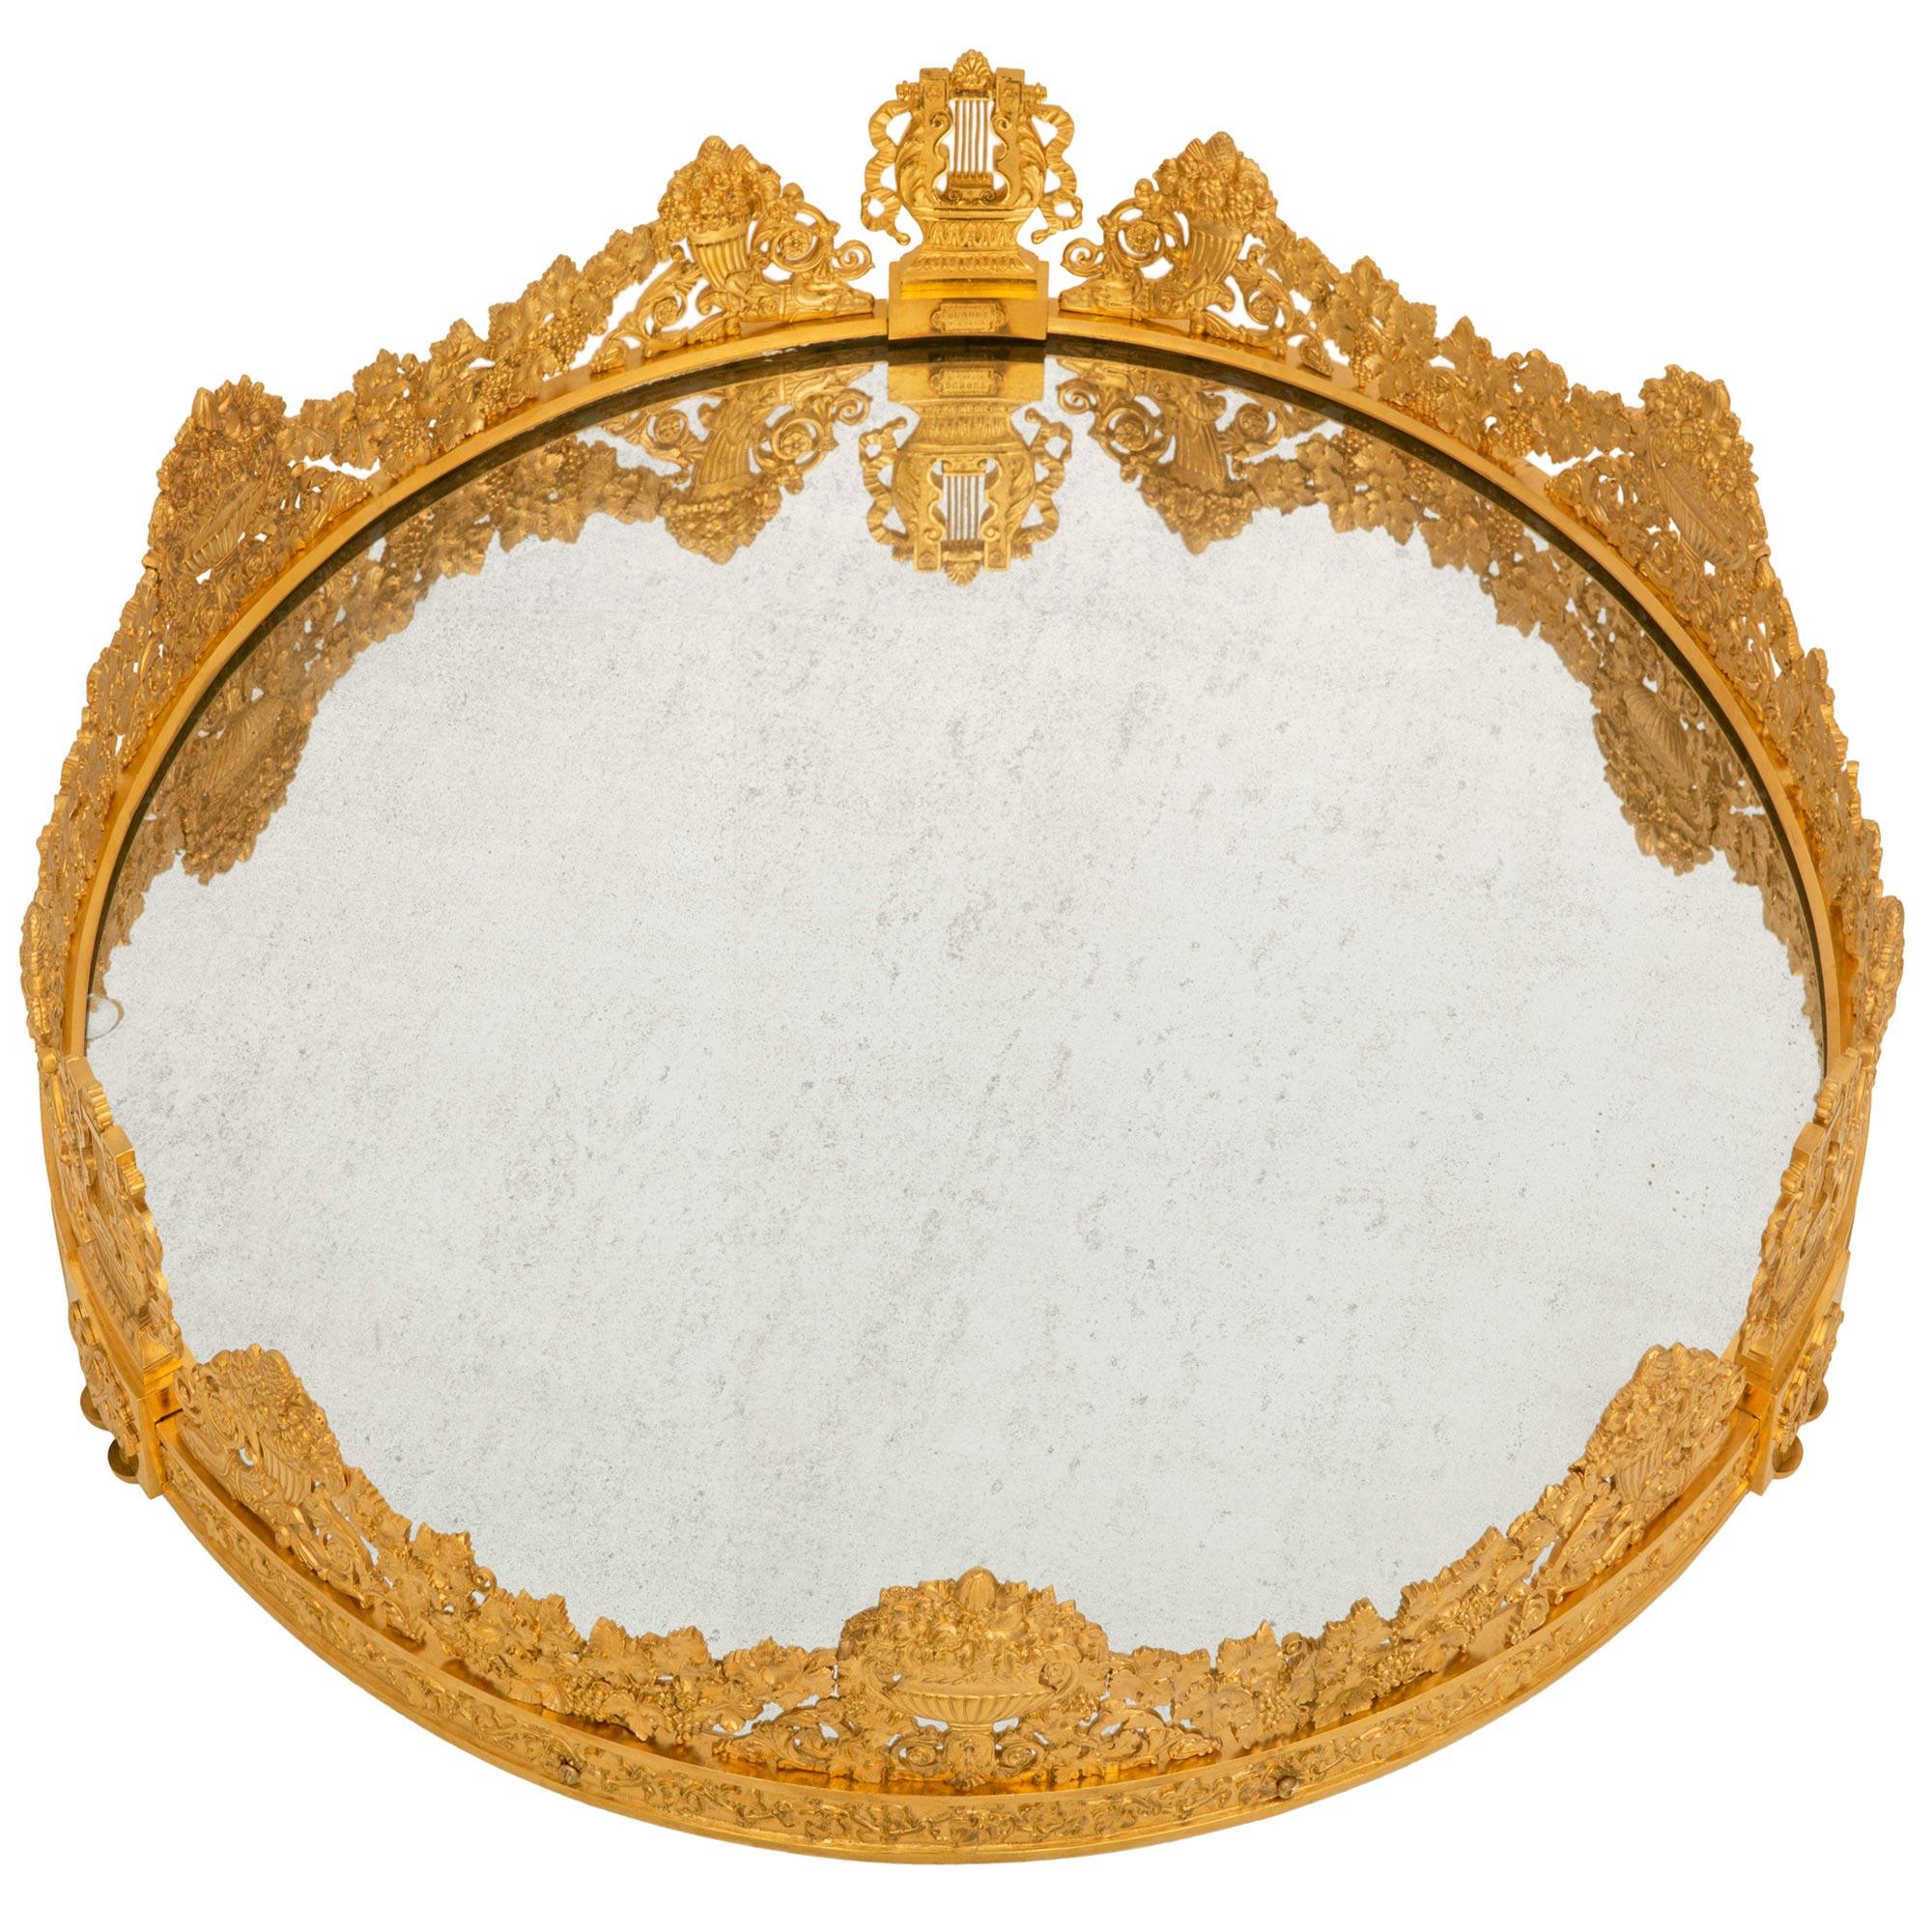 Eine sehr beeindruckende und großen Maßstab Französisch 19. Jahrhundert Charles X Periode Ormolu und Spiegel Mittelstück Plateau, signiert Dunouy Fait a Paris. Der Sur Tout de Table wird von drei doppelten Ormolu-Demi-Lune-Stützen getragen, unter